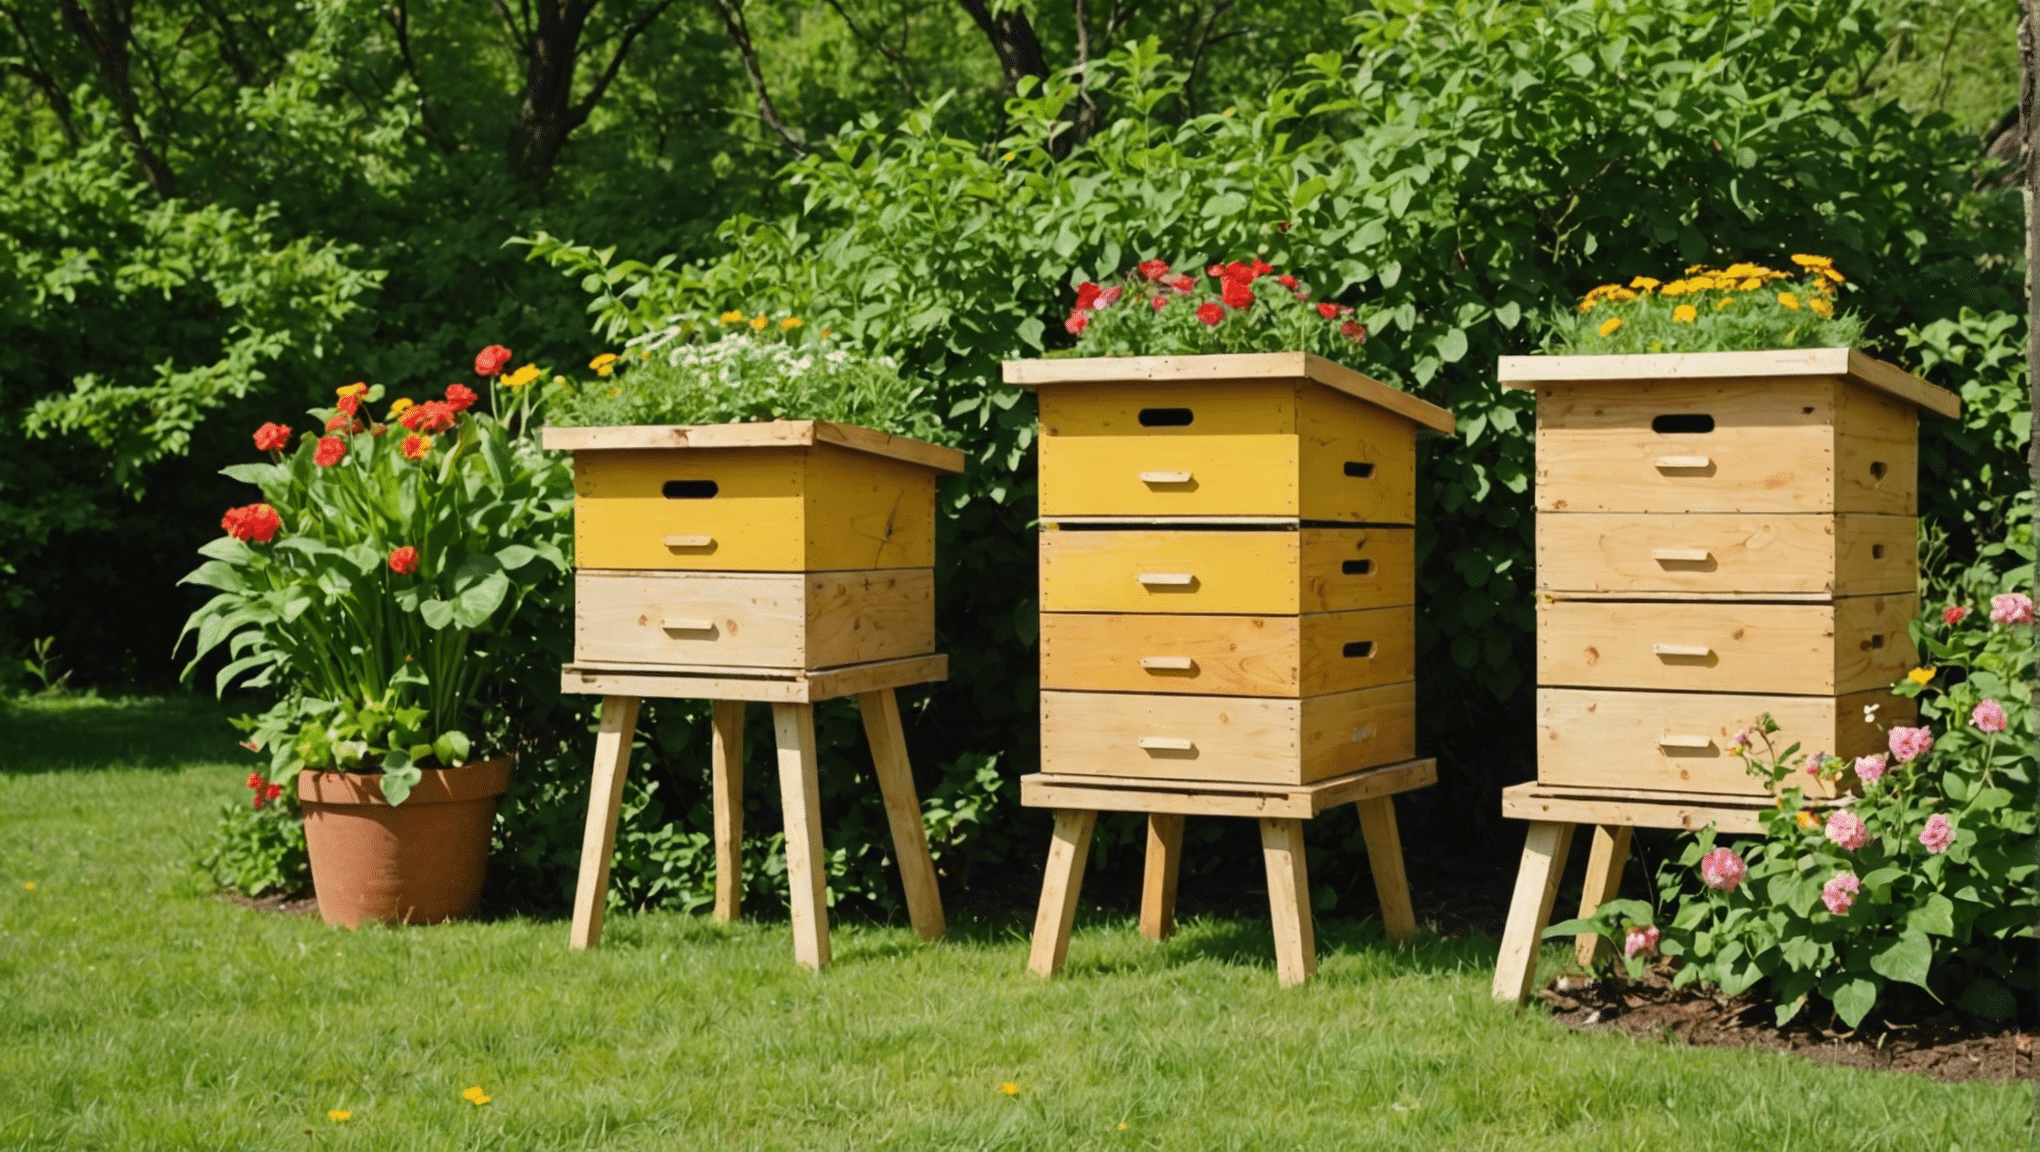 upptäck fördelarna med att använda bikupor och hur de kan påverka biodlingsmetoder och honungsproduktion positivt.